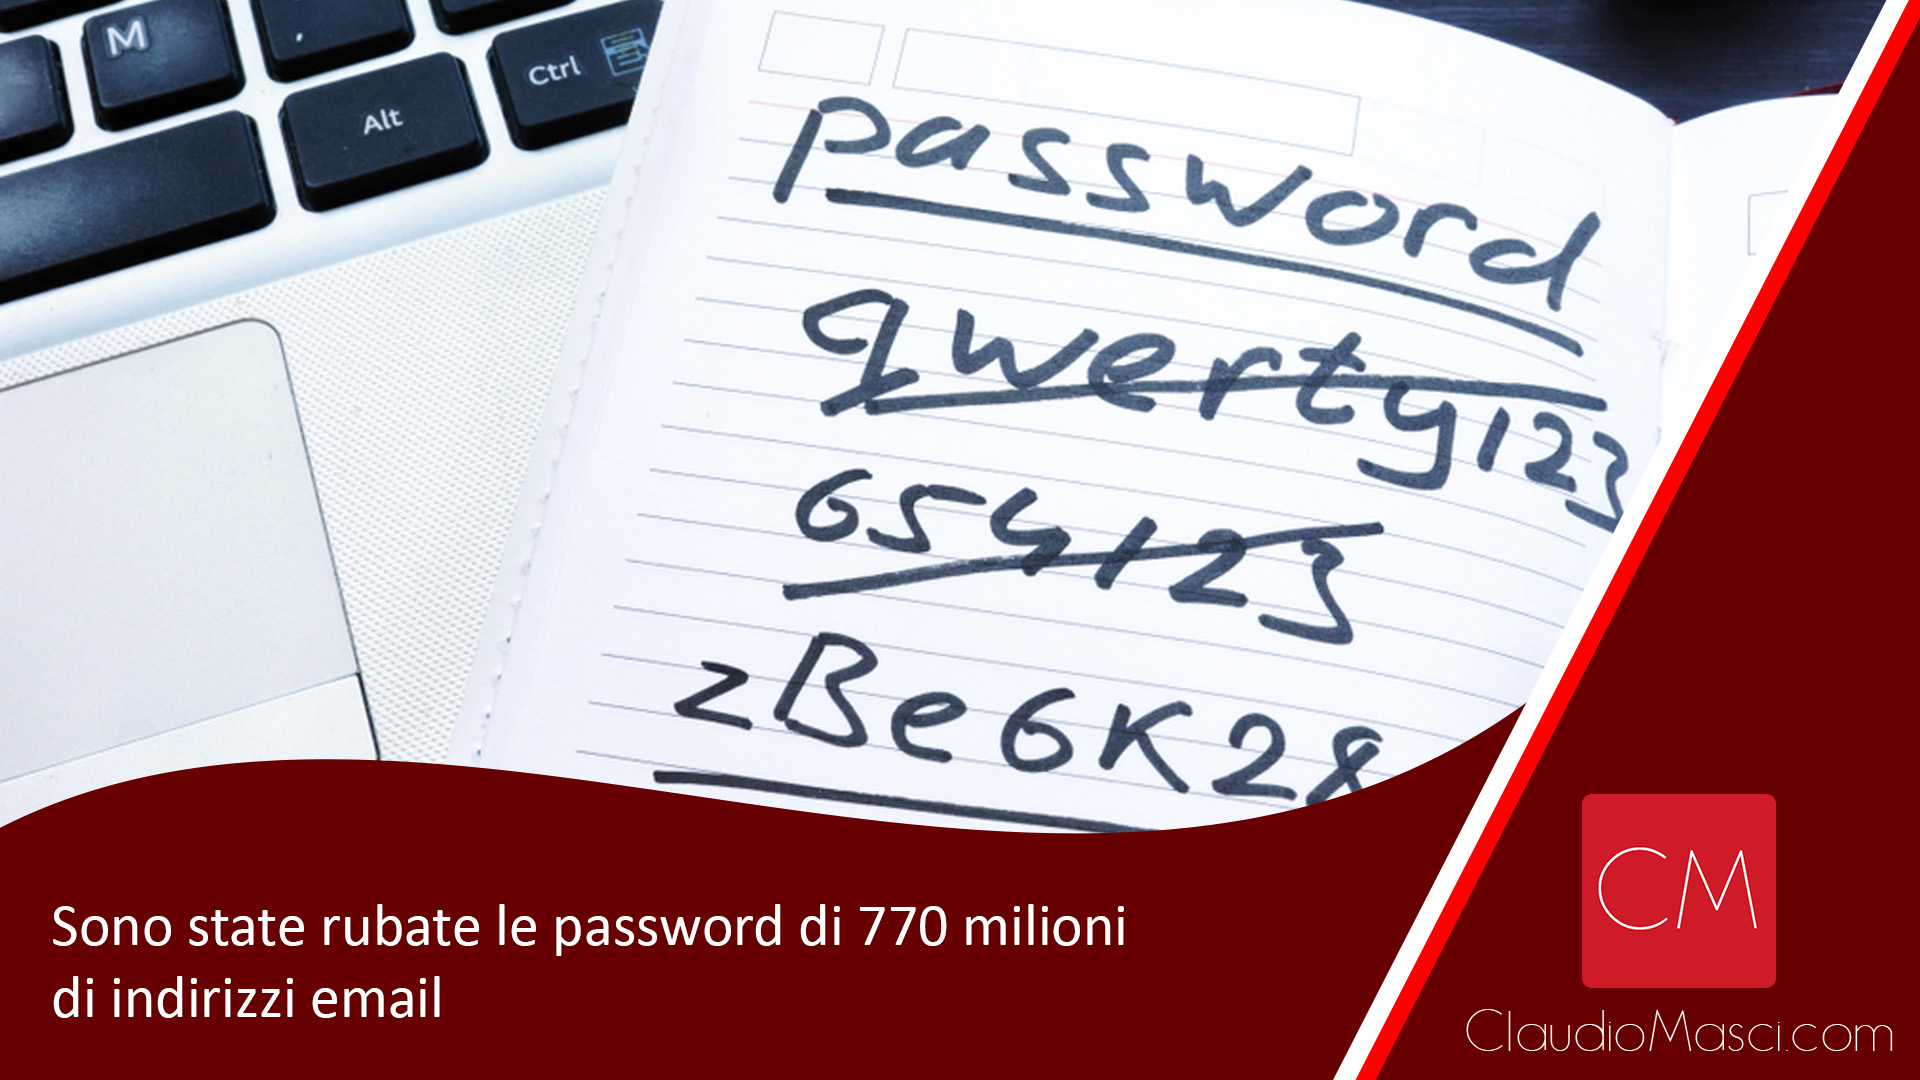 Sono state rubate le password di 770 milioni di indirizzi email